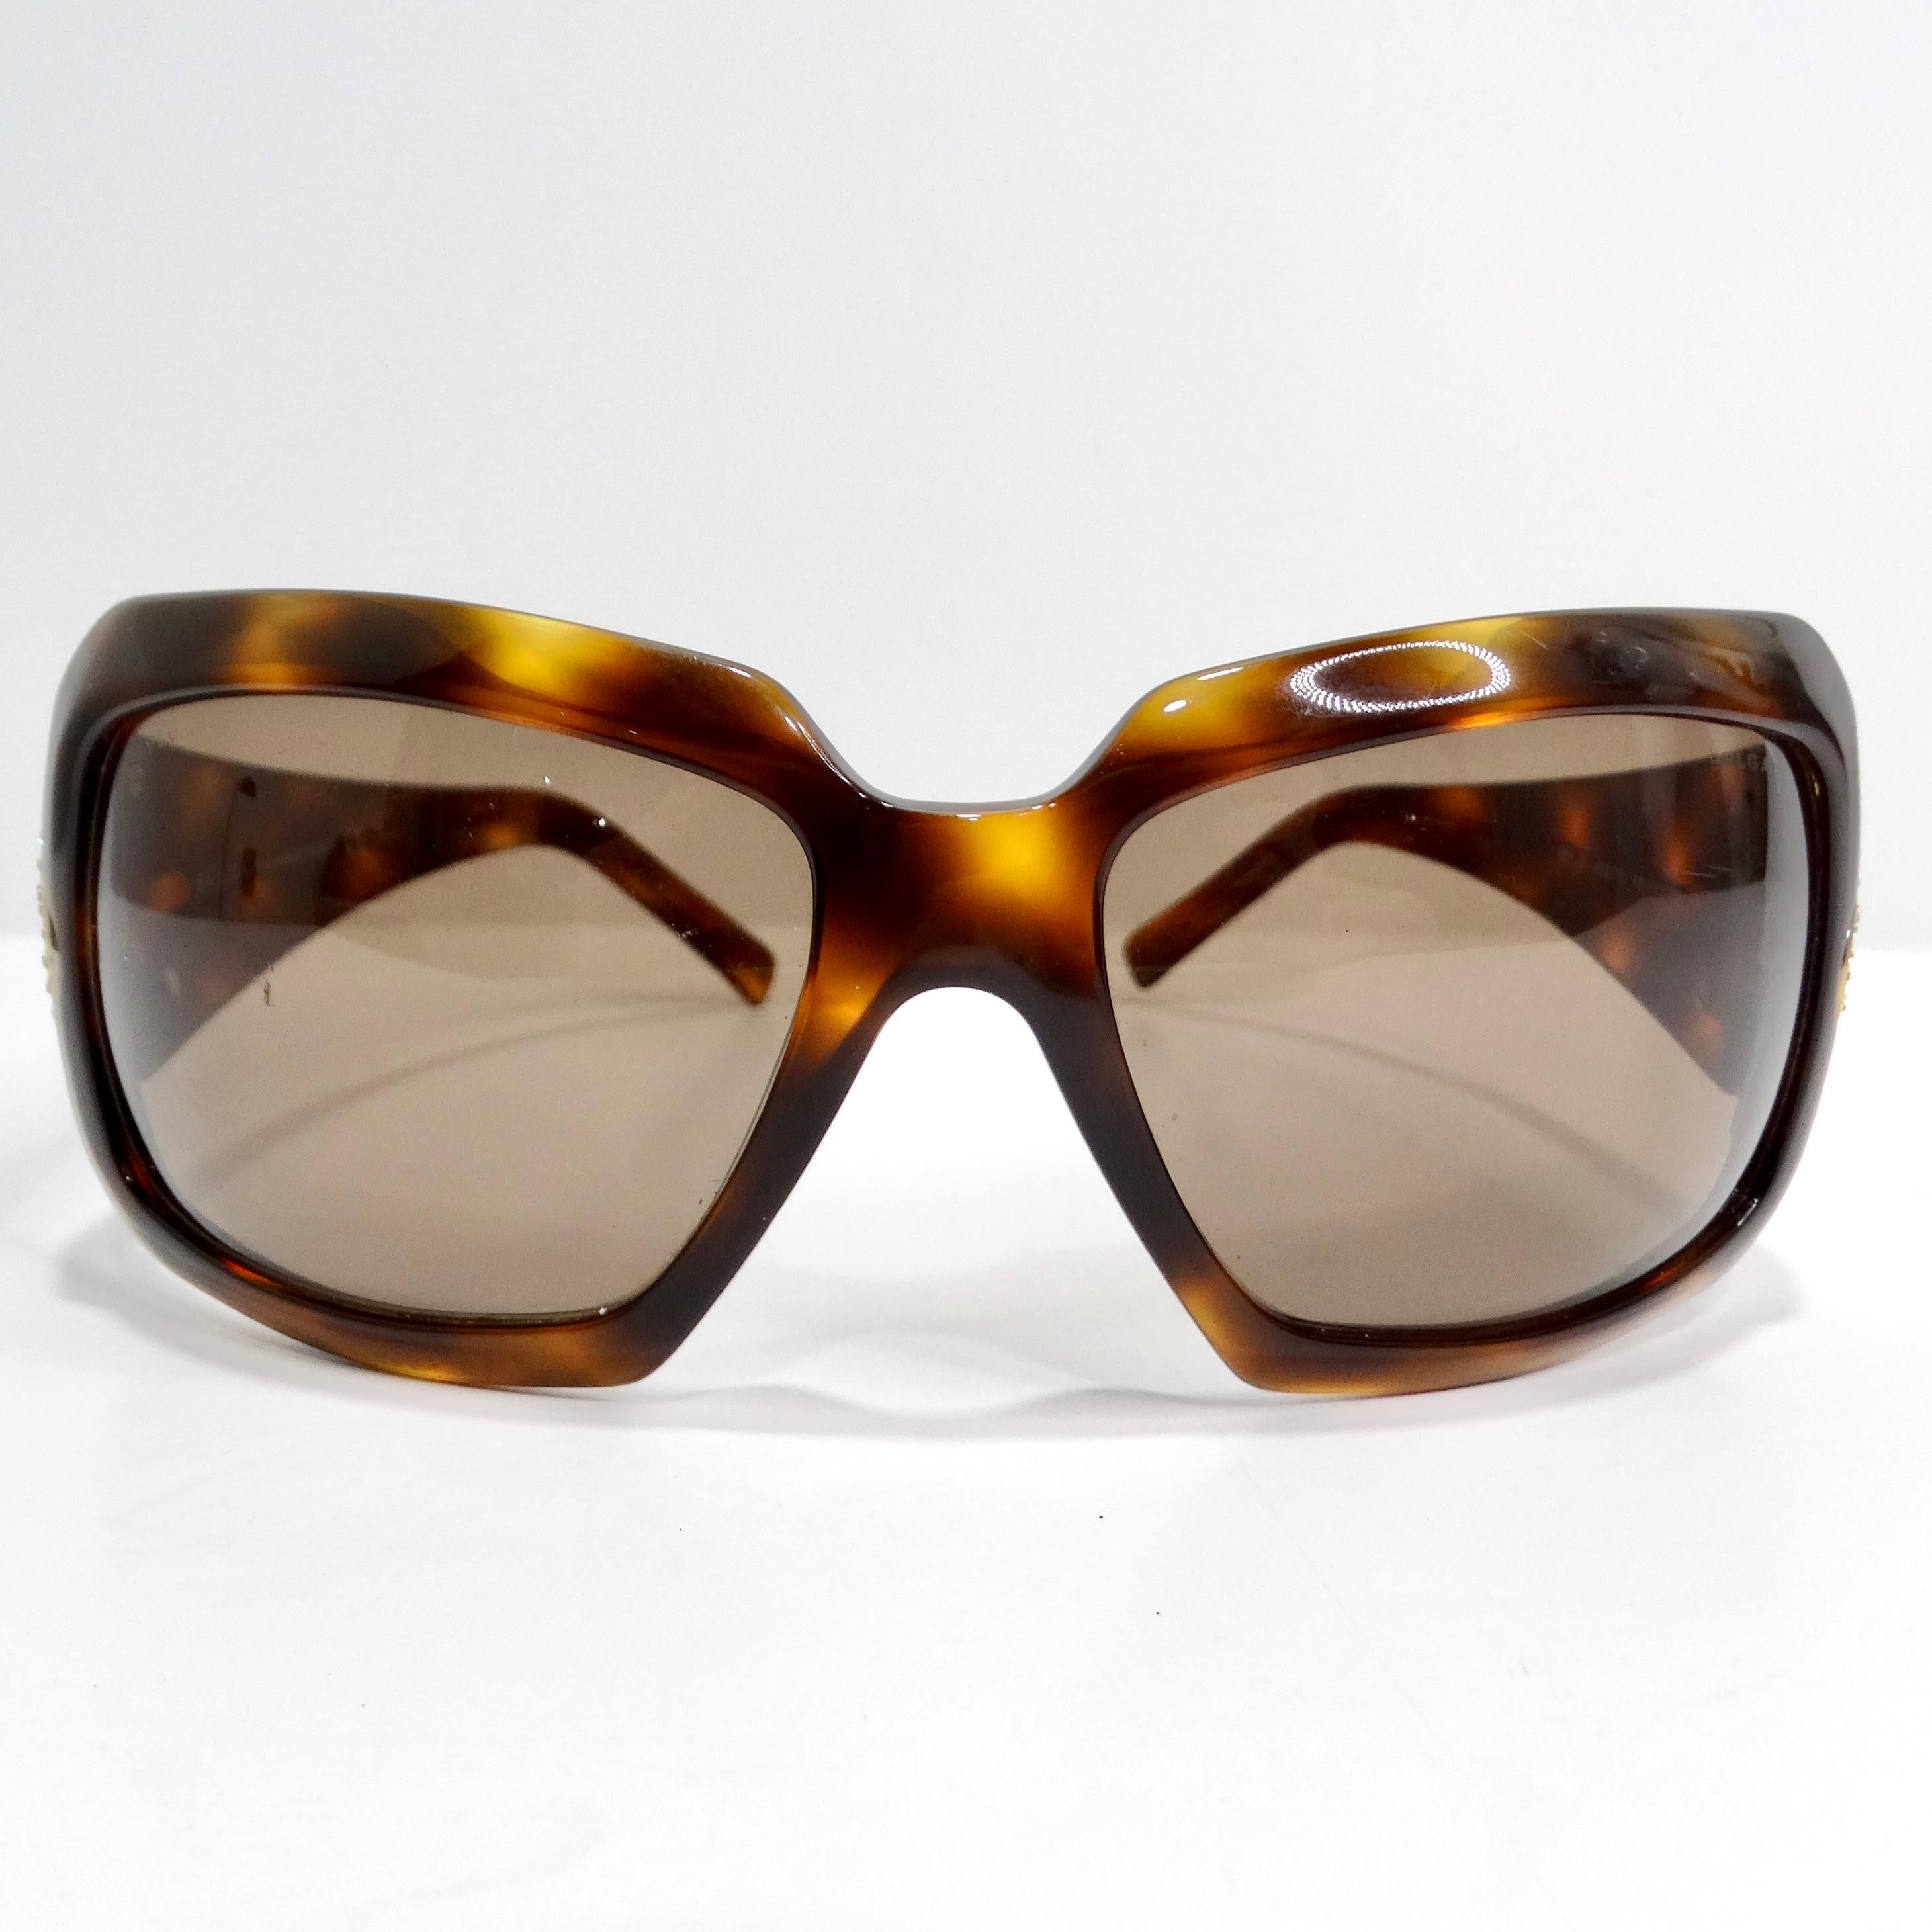 Voici les lunettes de soleil Bulgari Y2K Tortoise Shell, un mélange parfait de style classique et de glamour luxueux. Ces lunettes de soleil sophistiquées présentent un motif intemporel en écaille de tortue marron et une monture rectangulaire